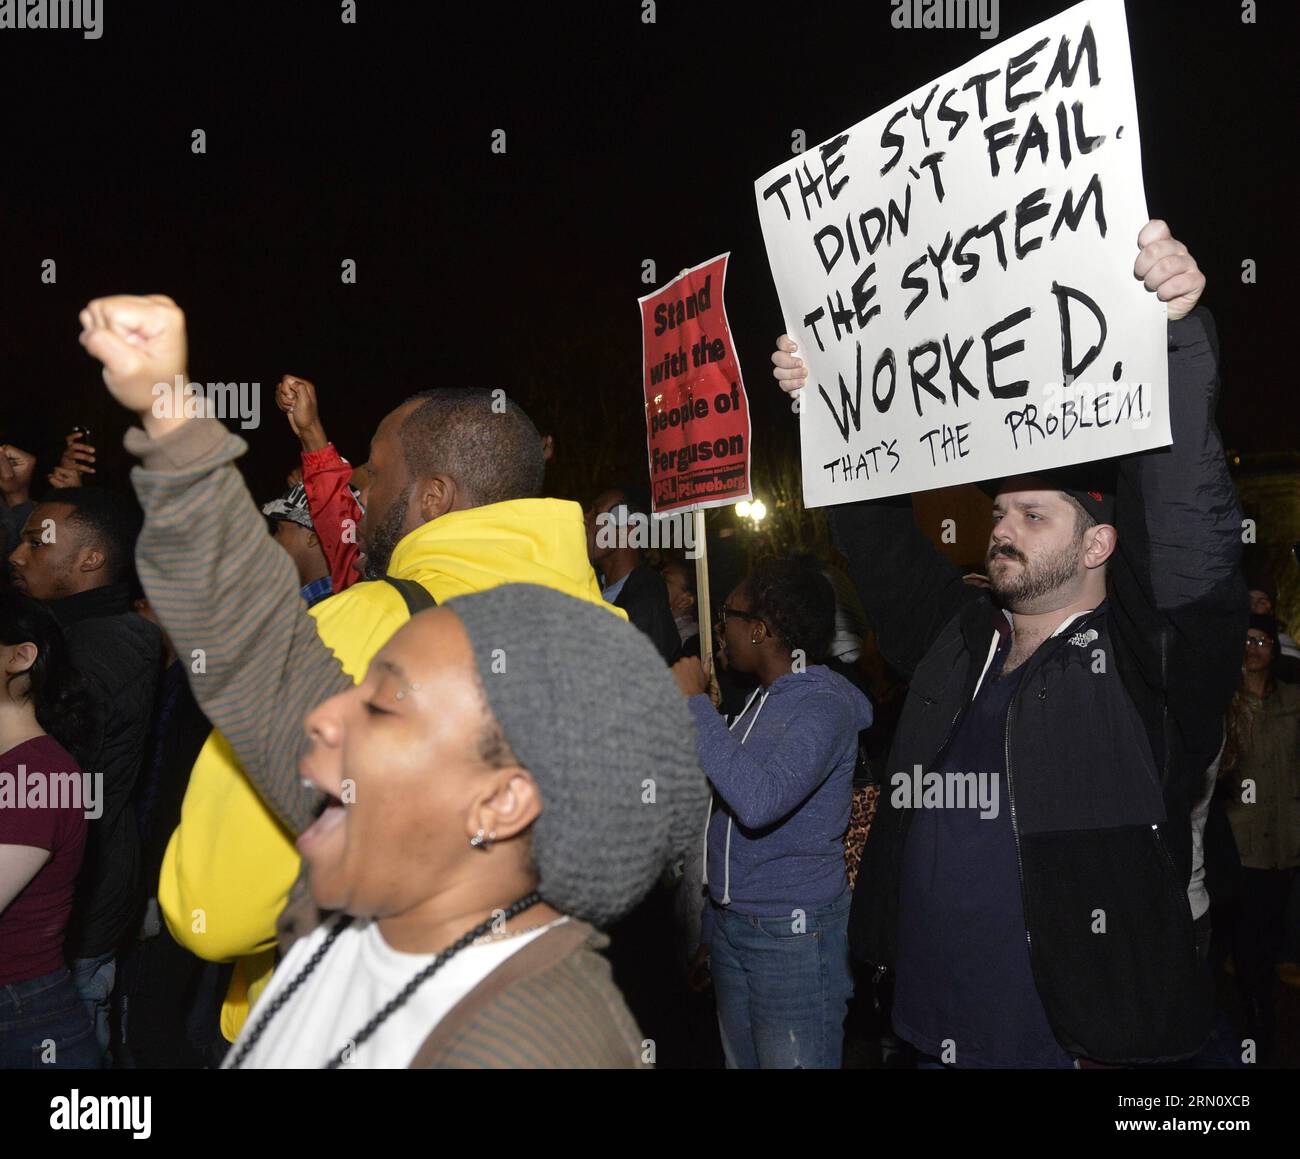 (141125) -- WASHINGTON D.C., la gente protesta contro la decisione del Grand jury di non accusare l'agente di polizia Darren Wilson nella fatale sparatoria al giovane afroamericano Michael Brown a Ferguson in agosto, di fronte alla Casa Bianca a Washington D.C., negli Stati Uniti, 24 novembre 2014. Più di 200 persone hanno partecipato alla protesta di fronte alla Casa Bianca lunedì. ) US-WASHINGTON D.C.-WHITE HOUSE-PROTEST-FERGUSON SPARANDO A BaoxDandan PUBLICATIONxNOTxINxCHN le celebrità di Washington D C protestano contro la decisione della grande giuria di non accusare l'agente di polizia Darren Wilson nella sparatoria fatale Foto Stock